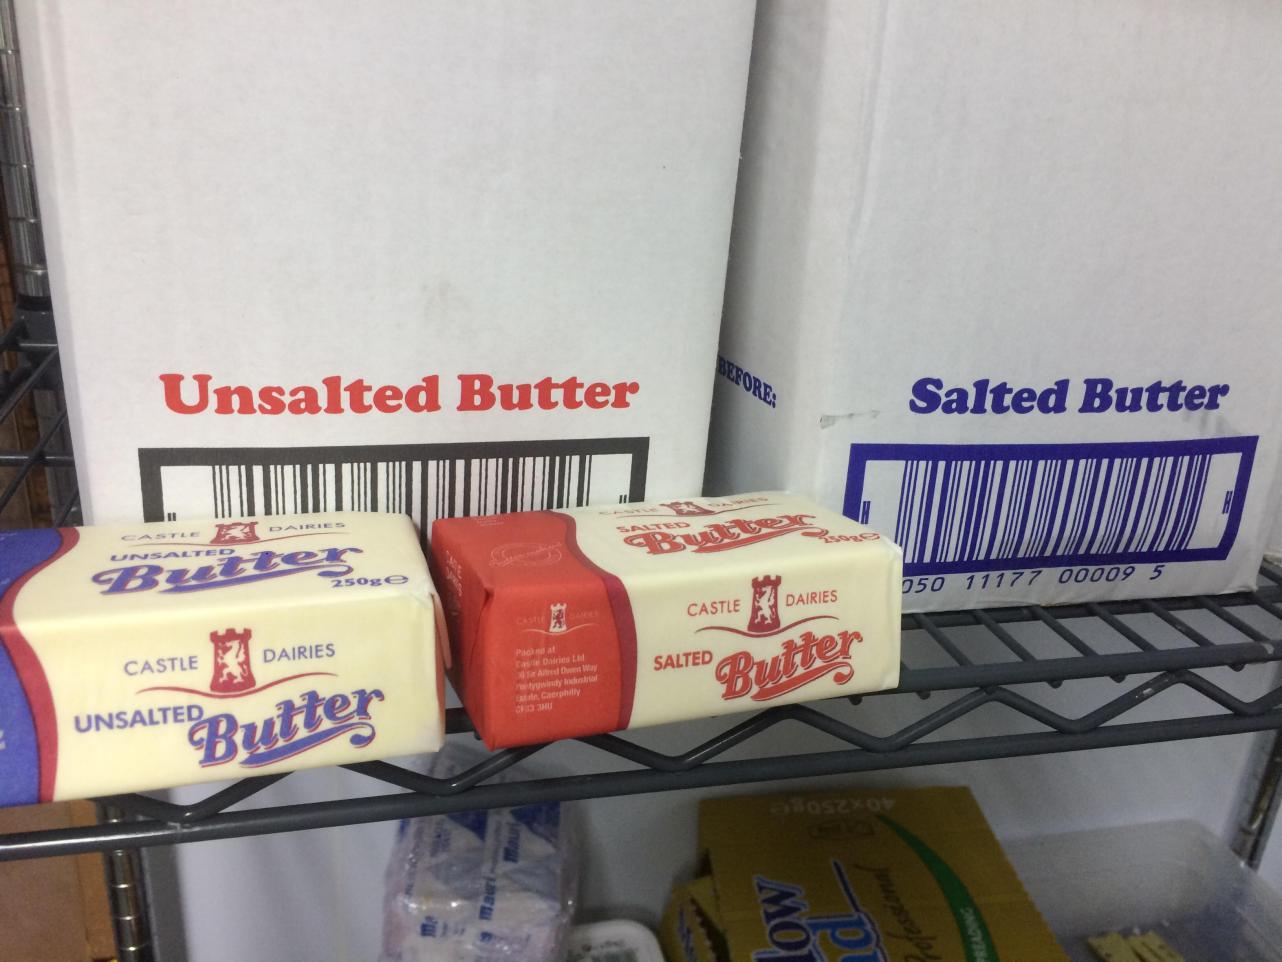 carton - Aeroren Unsalted Butter Salted Butter 050 11177 00009 5 Castle Dairies Castle Dairies Salted Butter Dairies Castle de D ries Unsalted Butter mau